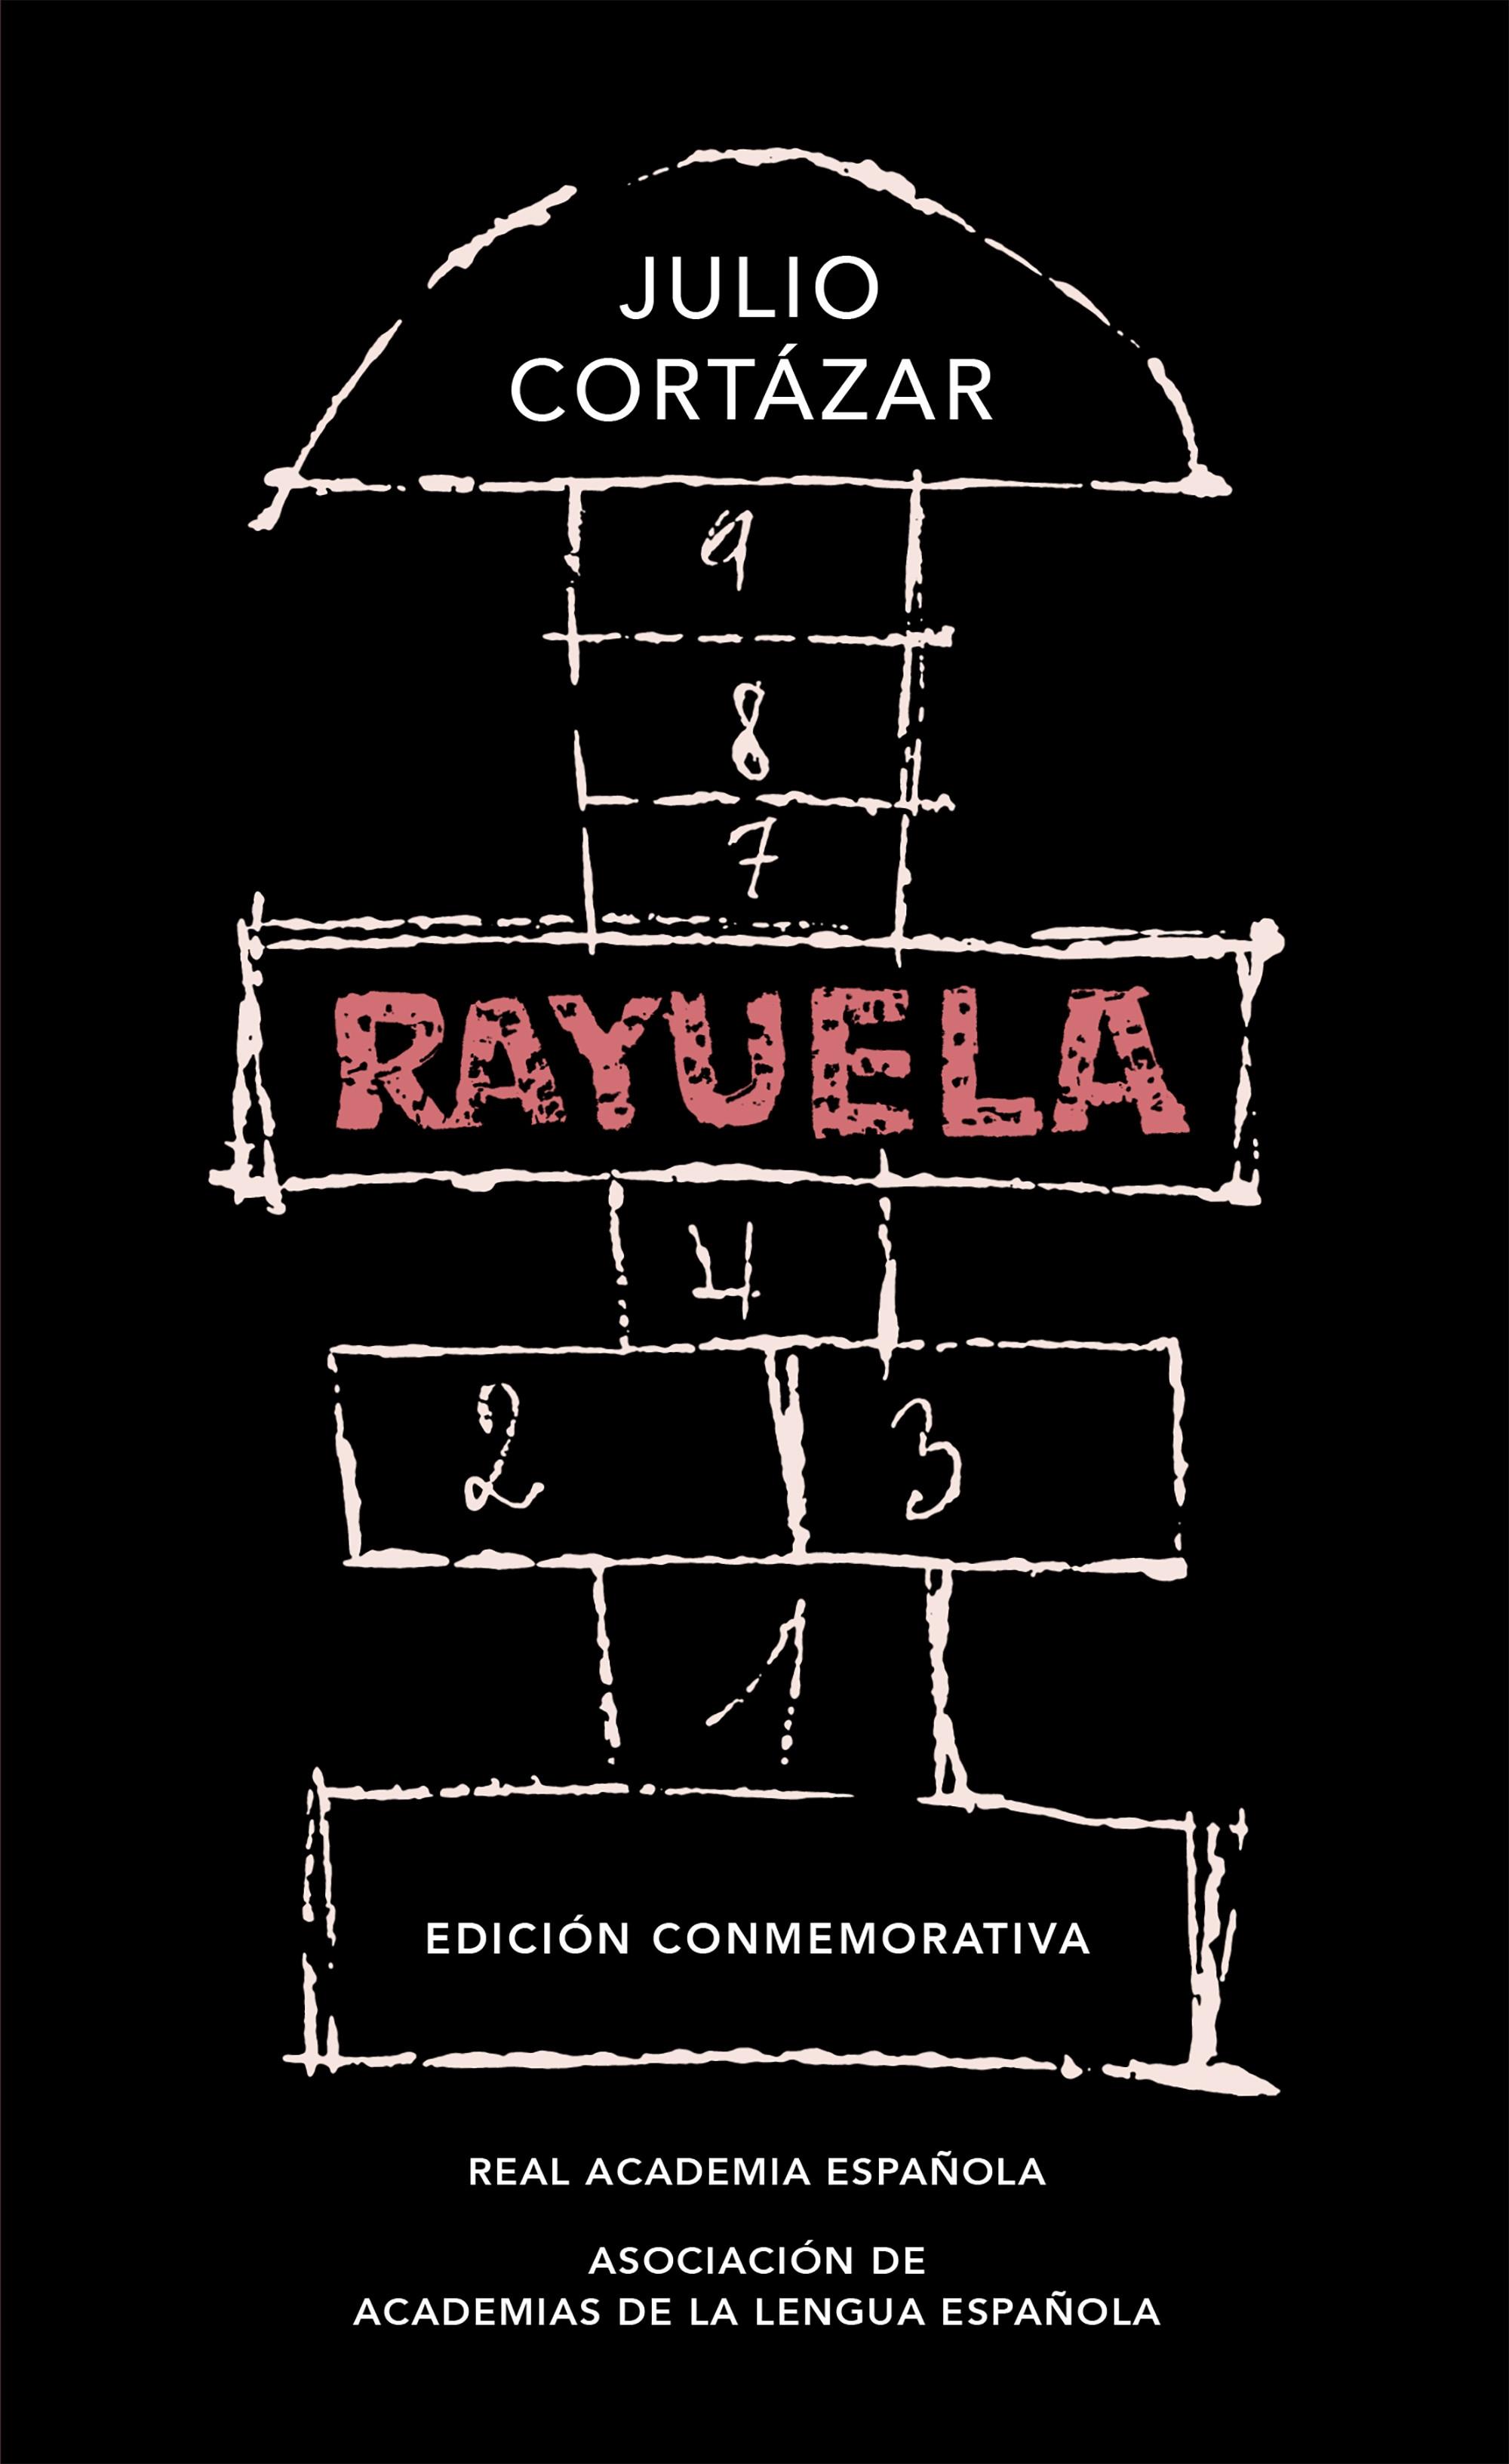 Rayuela "(Edición conmemorativa)". 